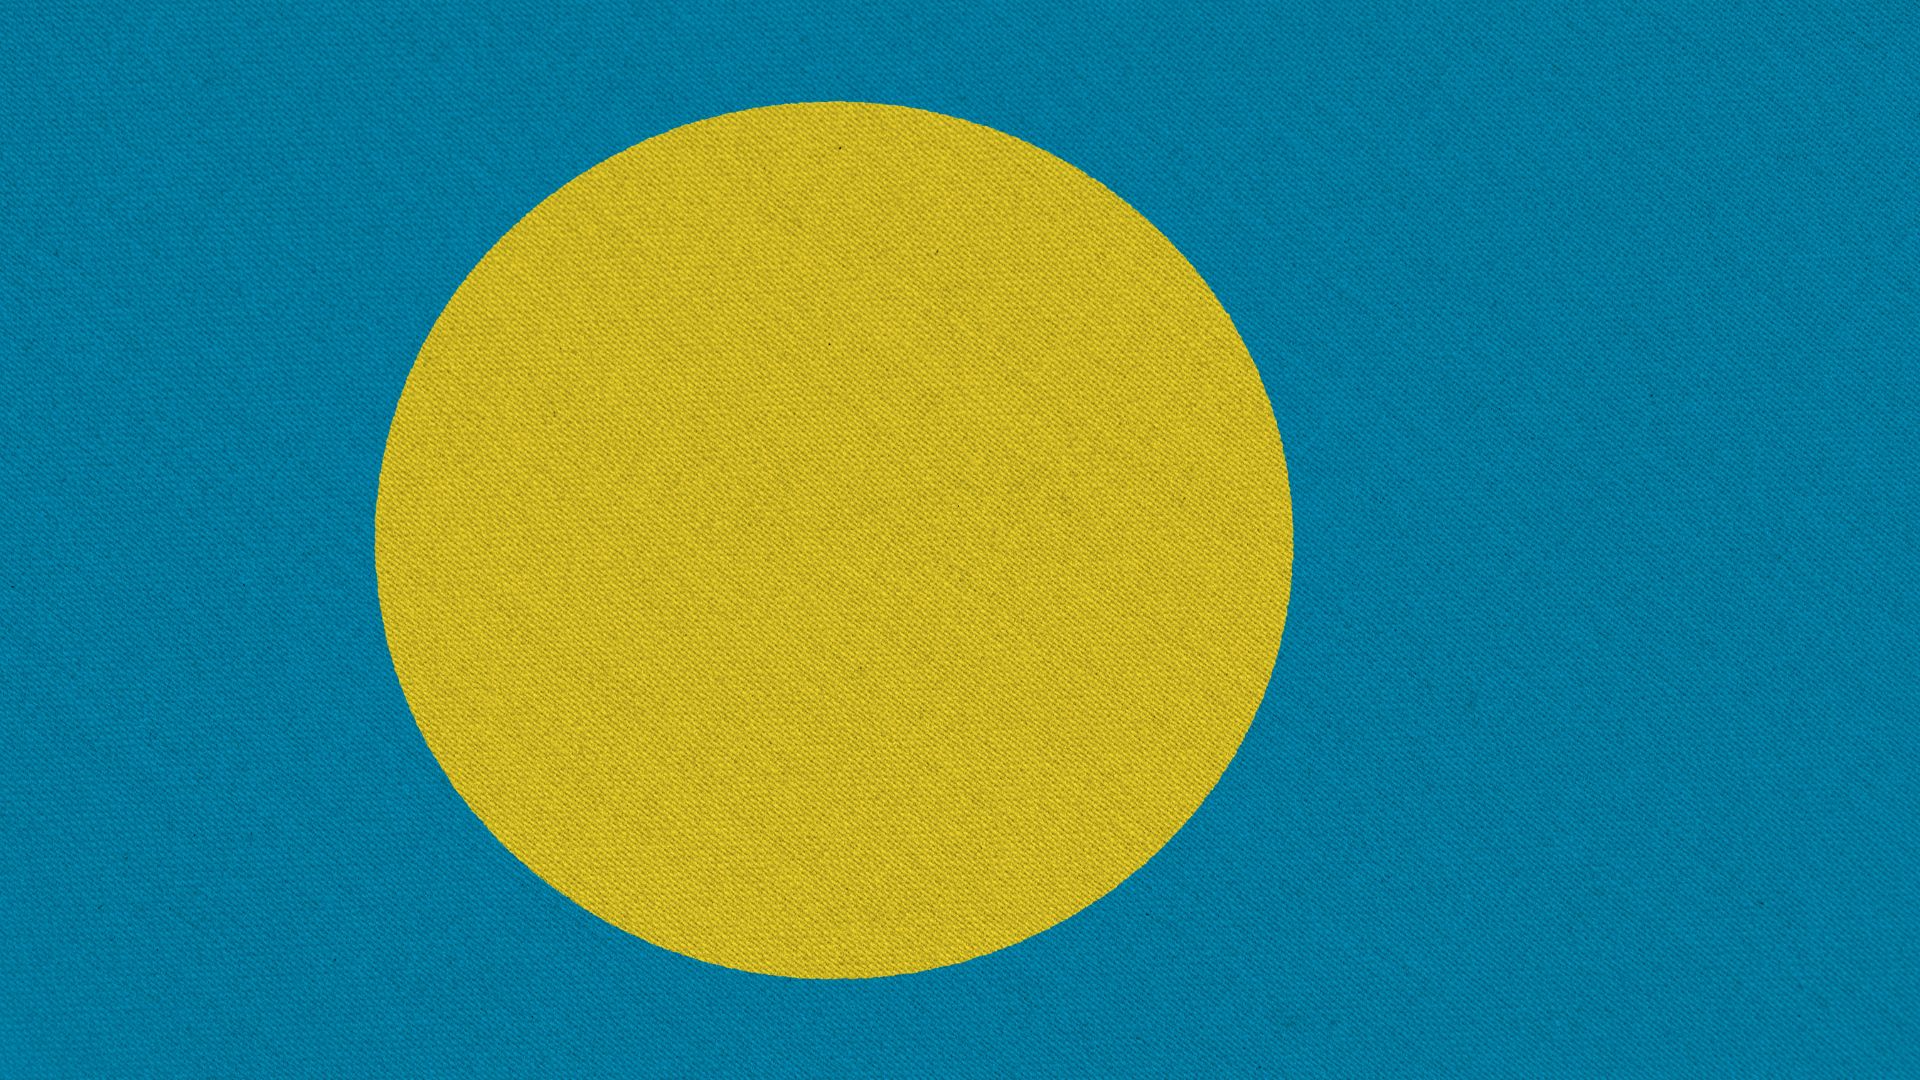 A bandeira de Palau possui um design parecido com a bandeira do Japão. Ela é similar a uma lua cheia dourada localizada no centro, com um fundo azul celeste. A lua representa a paz enquanto o azul celeste representa a transição de Palau para um governo próprio.